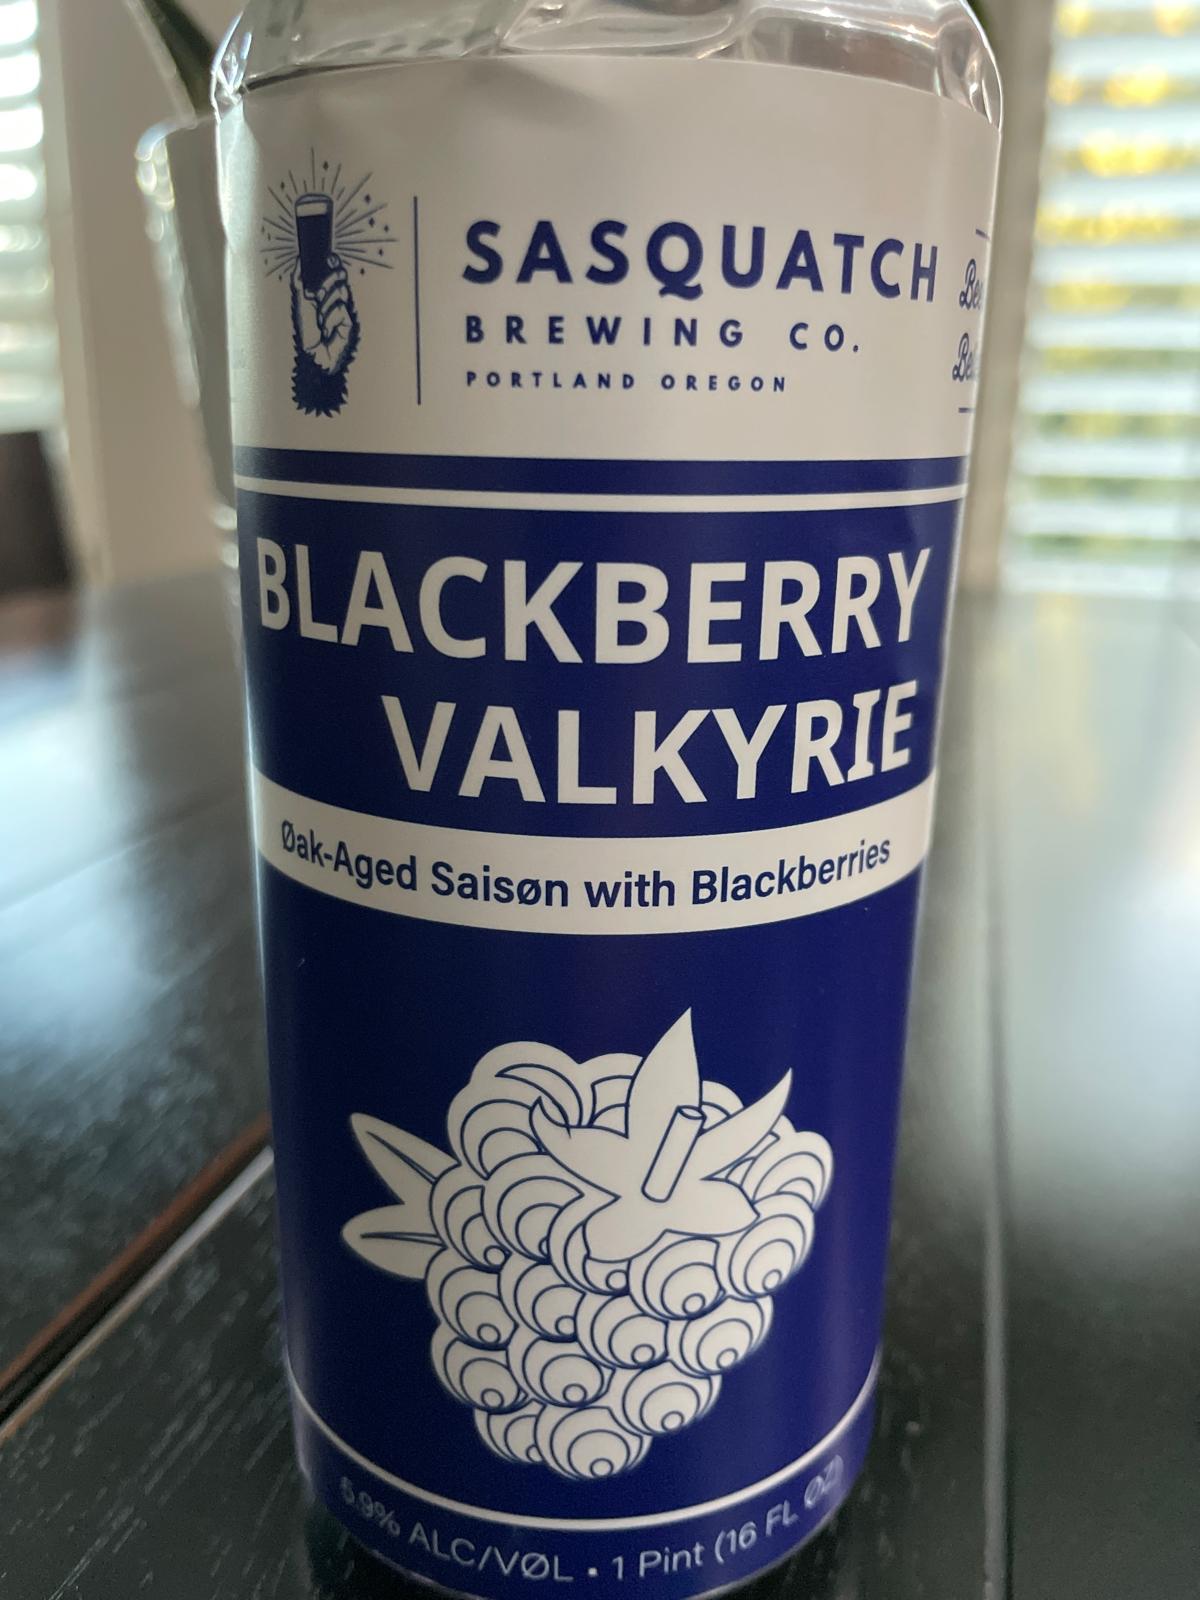 Blackberry Valkyrie